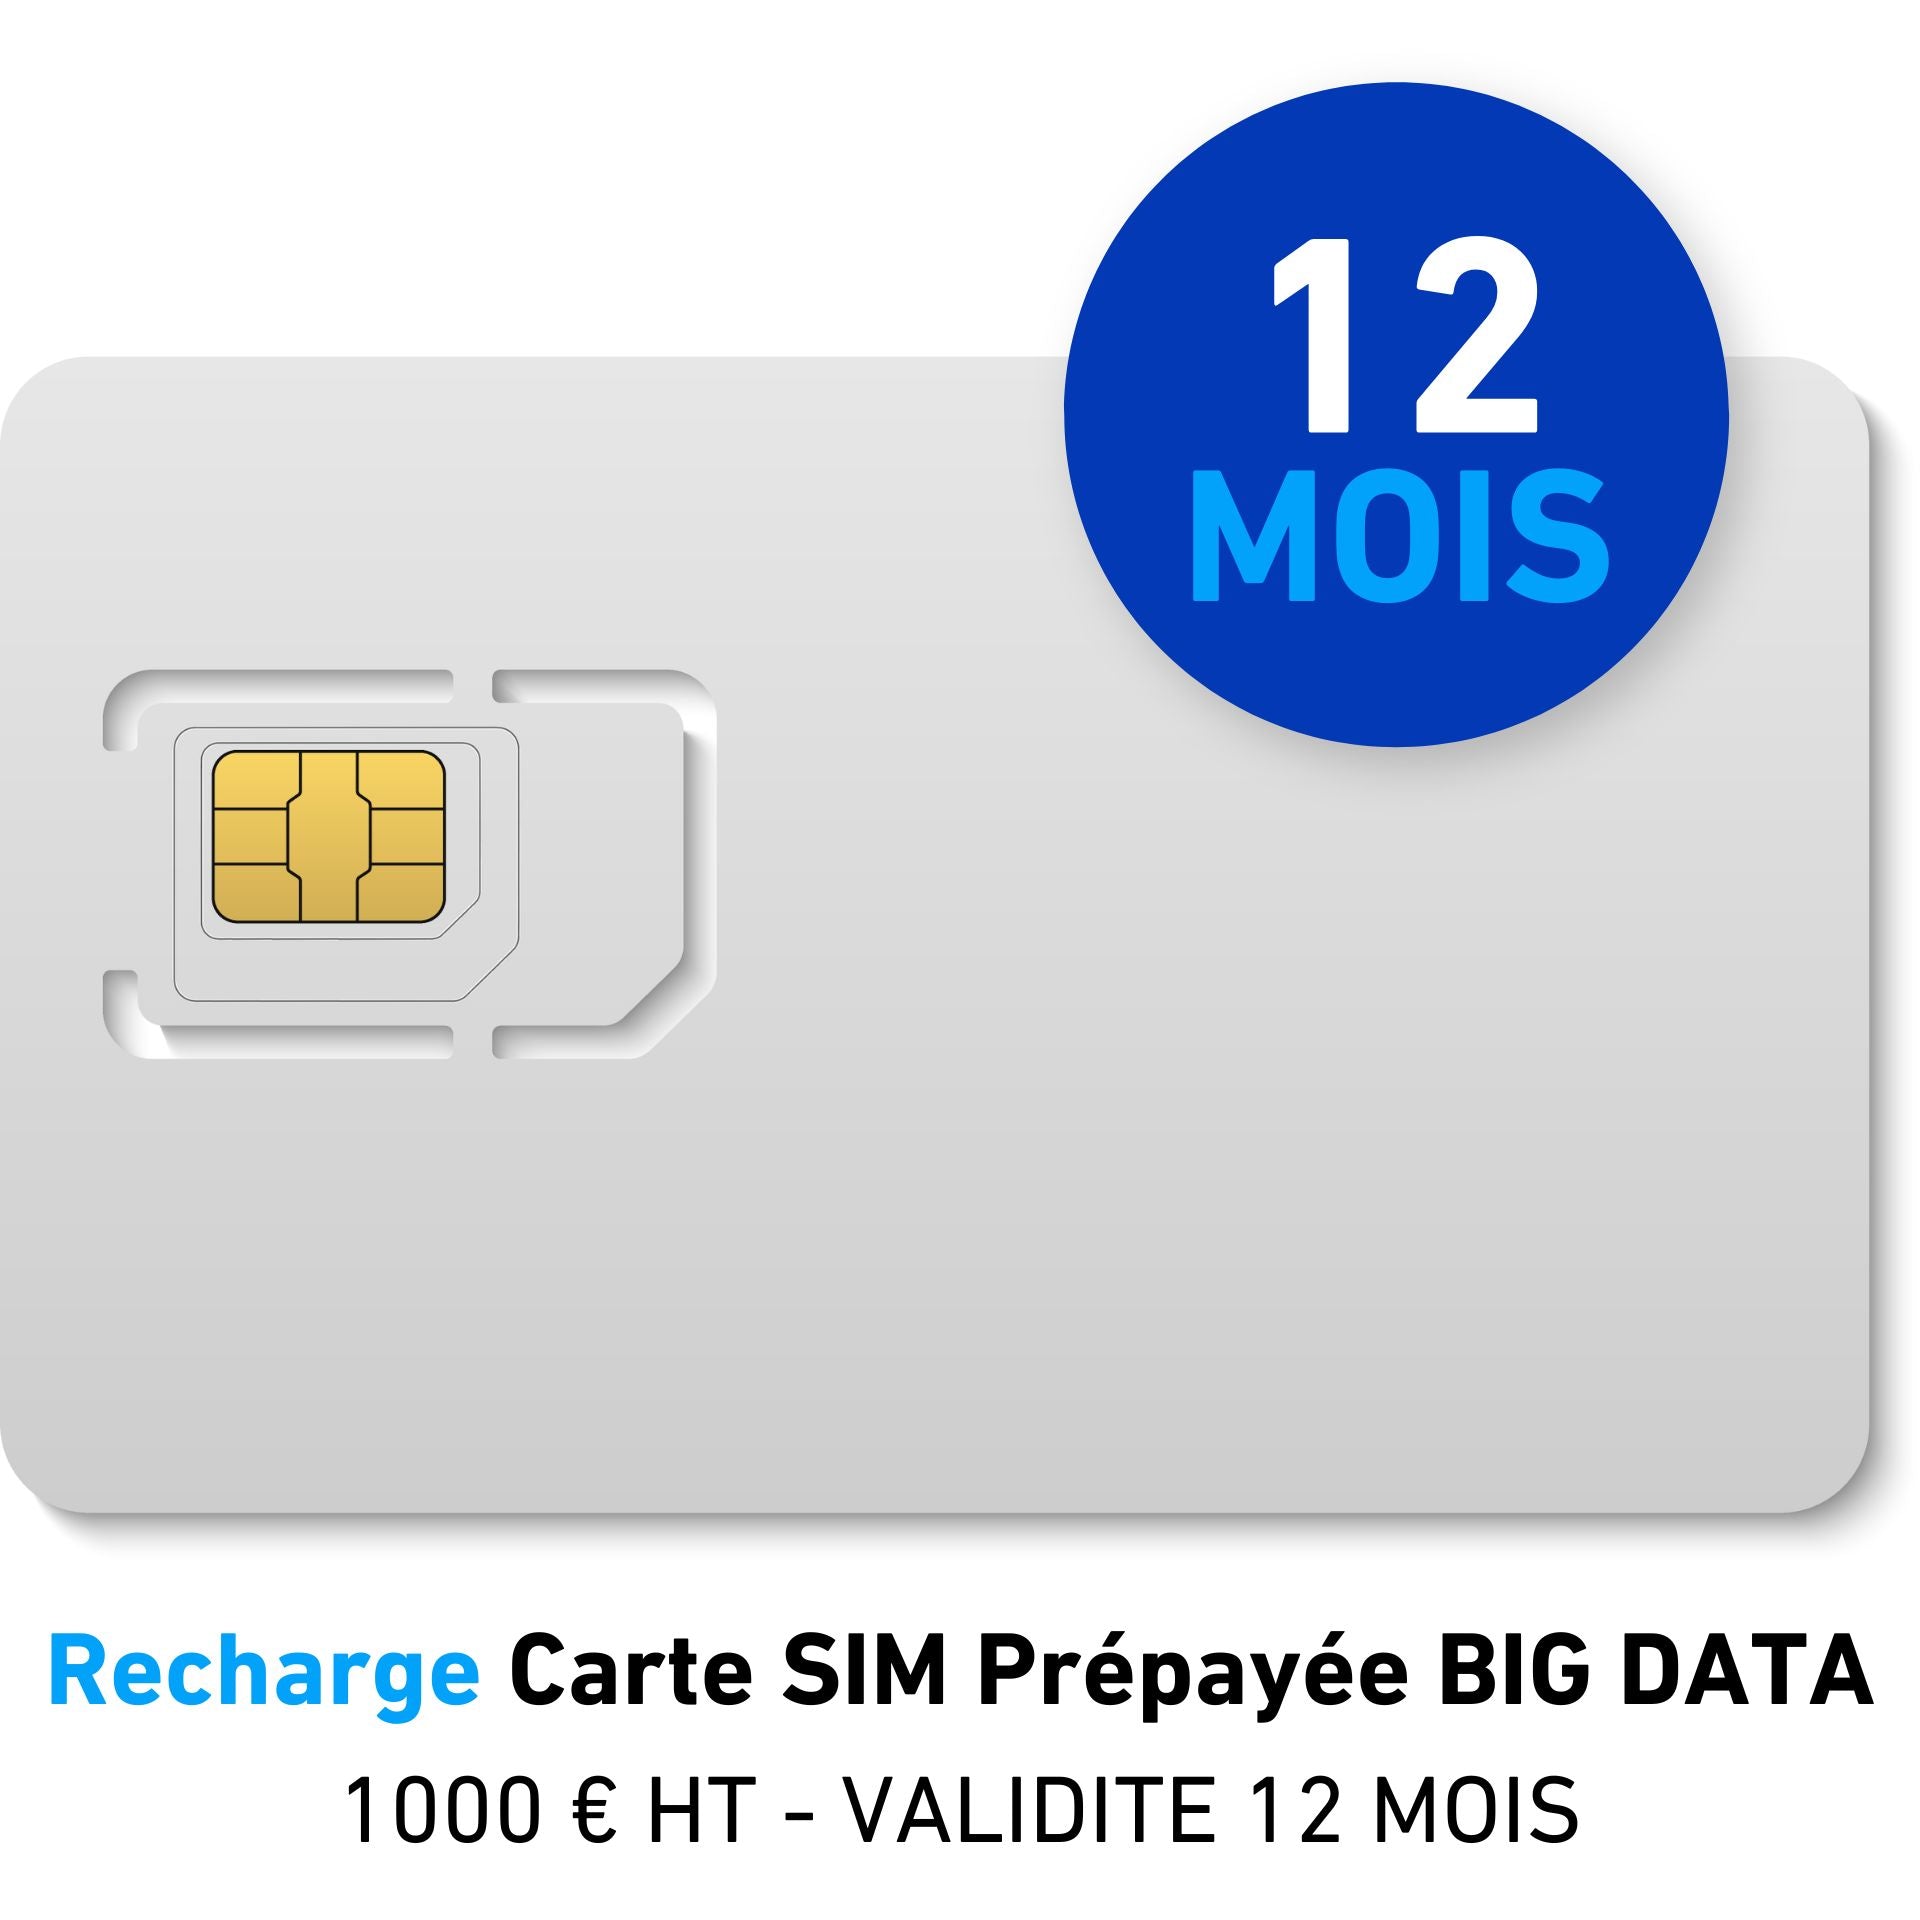 Recharge Carte SIM Prépayée BIG DATA 1000 € HT - VALIDITE 12 MOIS